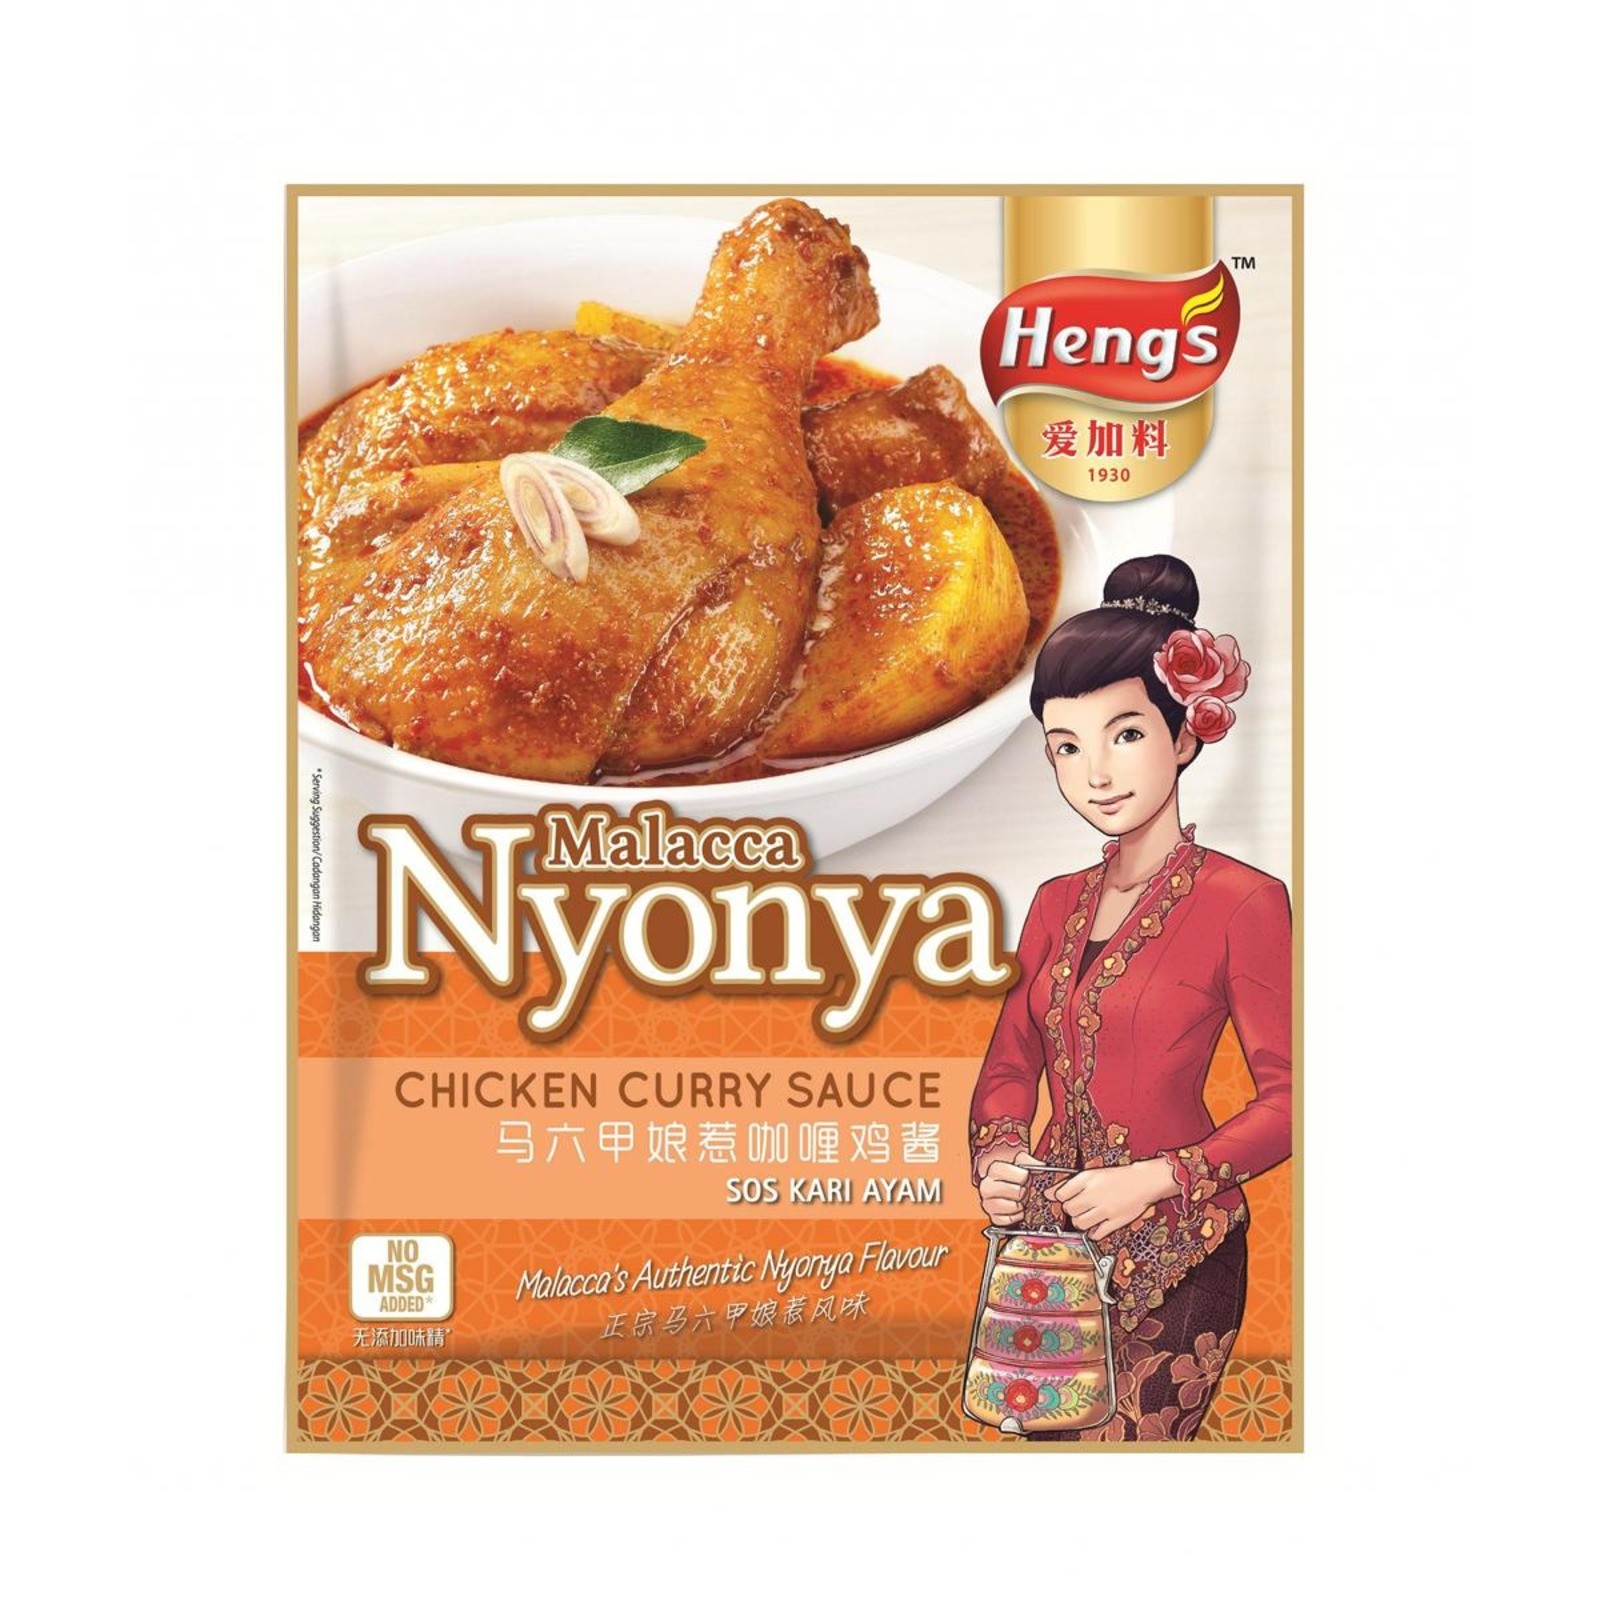 malacca-nyonya-chicken-curry-sauce